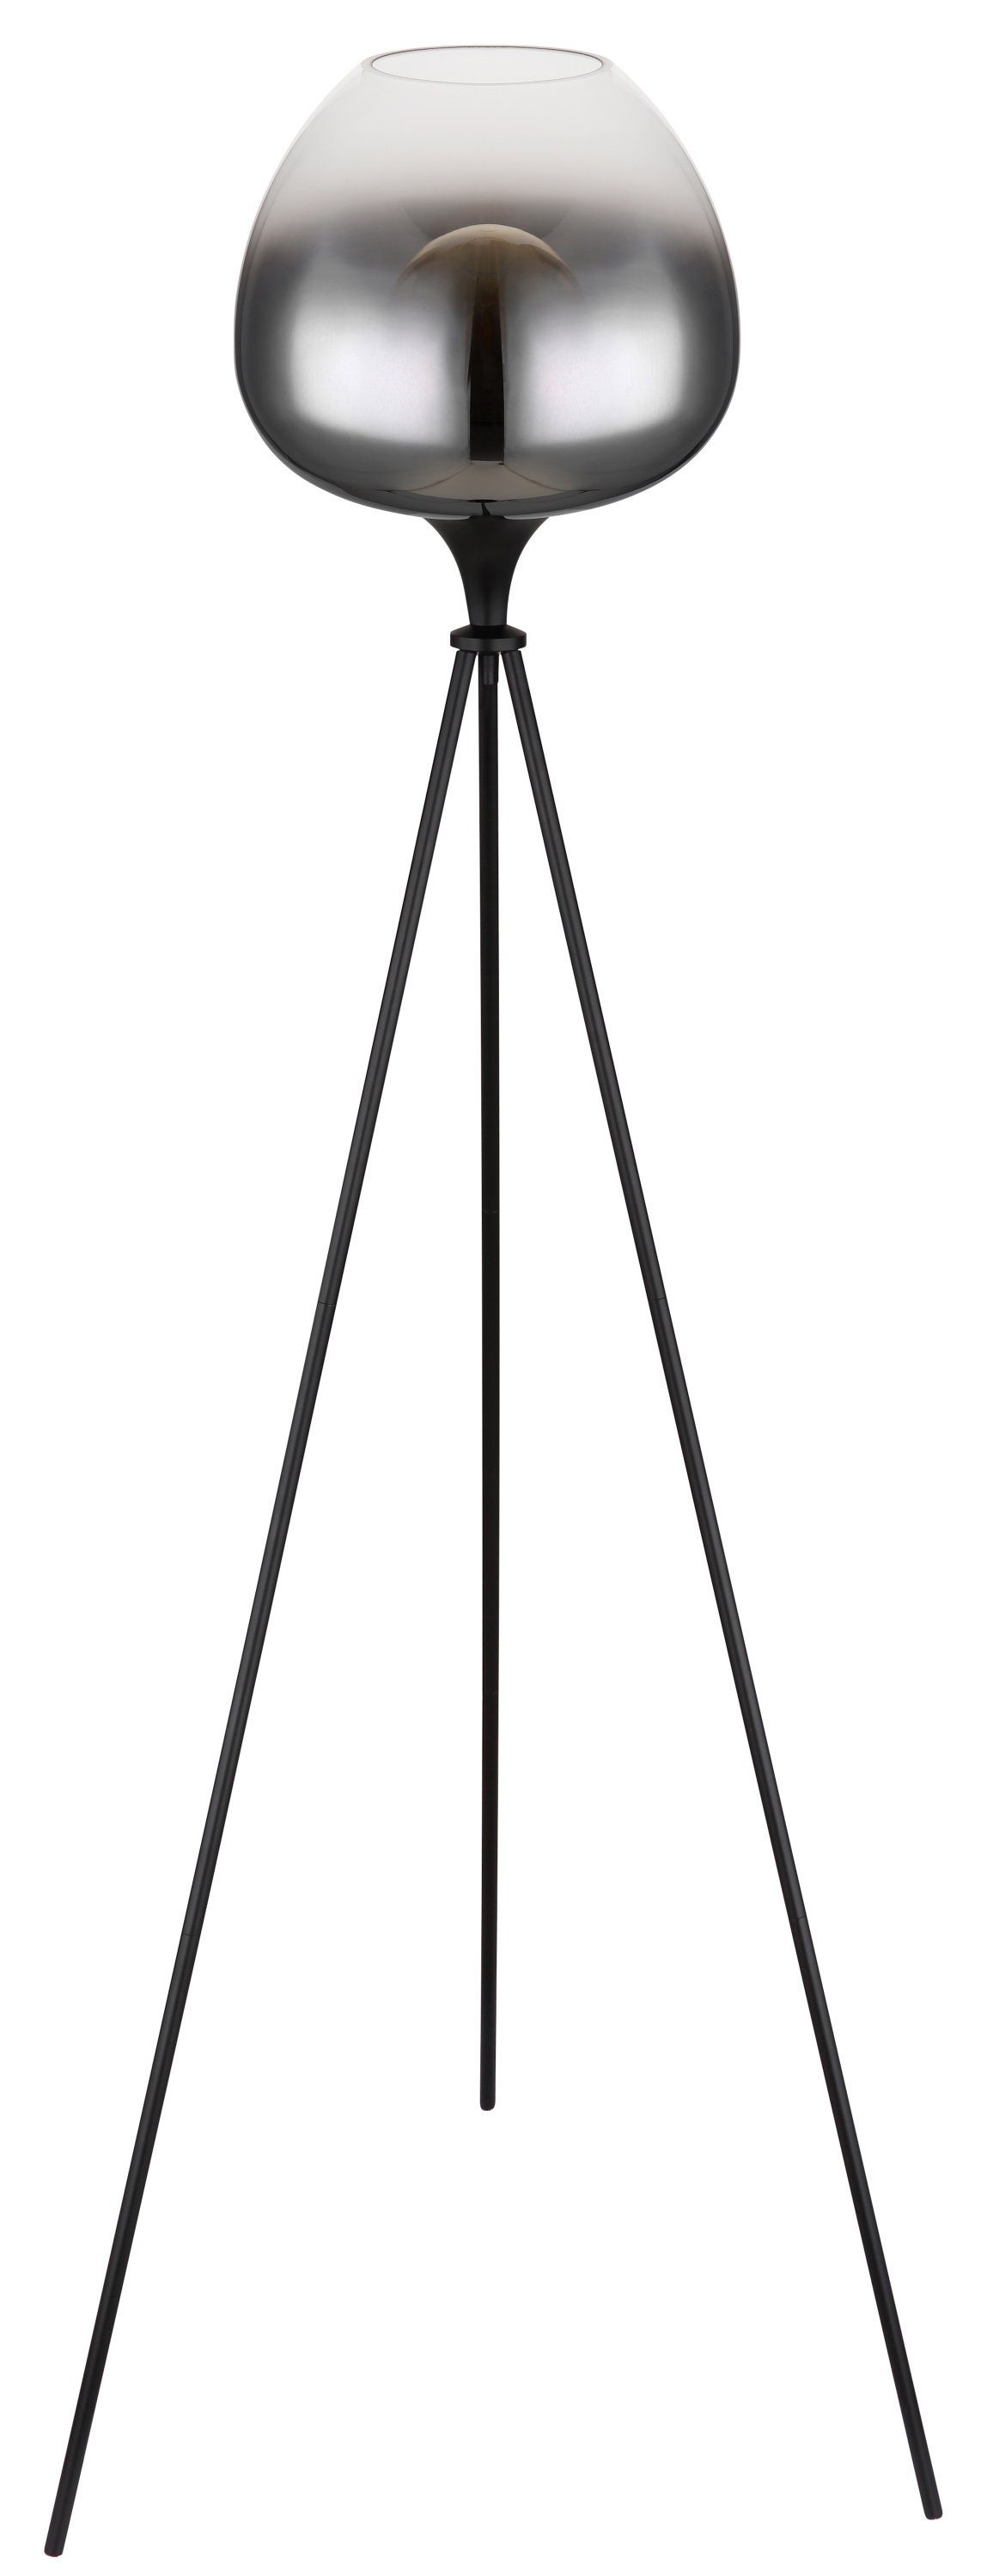 GLOBO LEUCHTEN Stehlampe Stehleuchte, GLOBO Lighting Stehleuchte MAXY (DH 65x145 cm) DH 65x145 cm schwarz